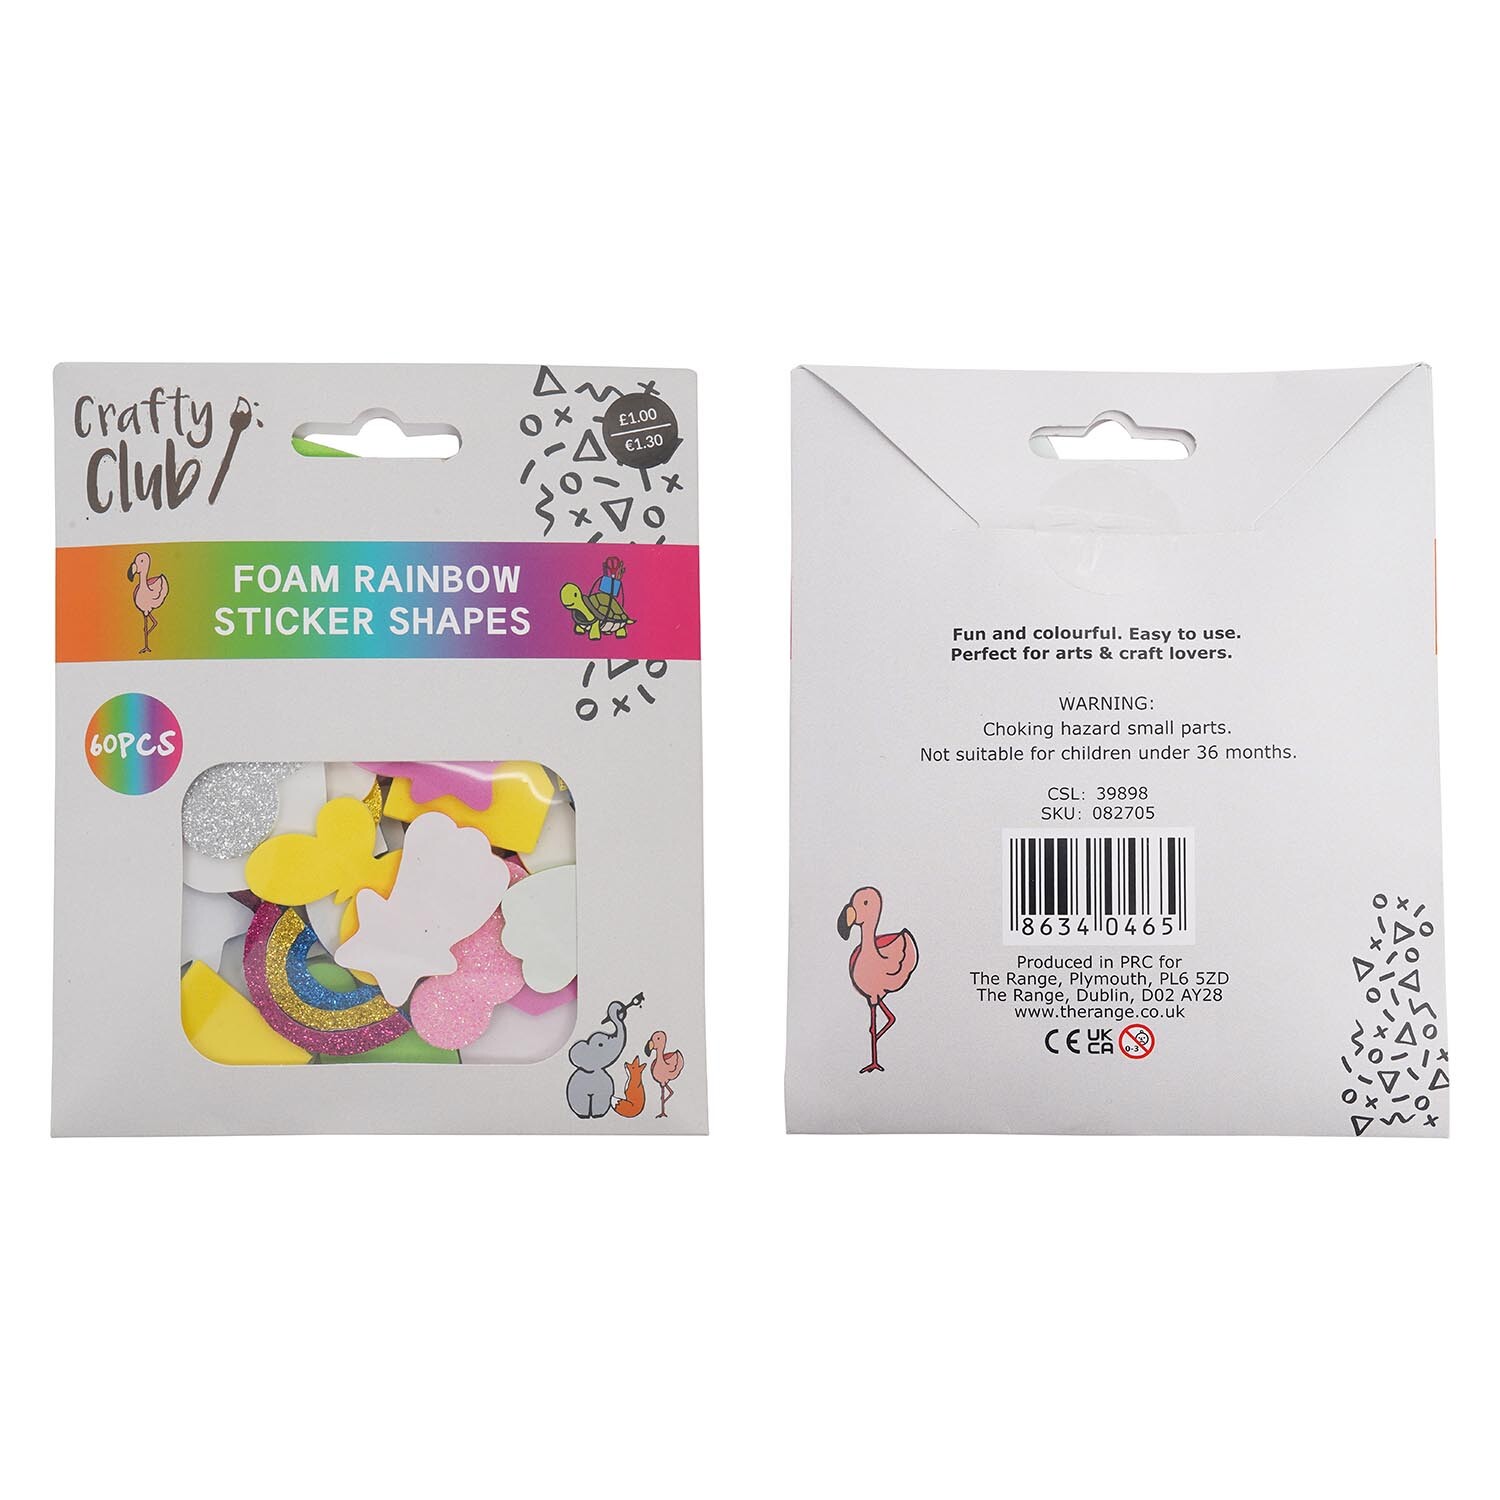 Crafty Club Foam Rainbow Sticker Shapes Image 3